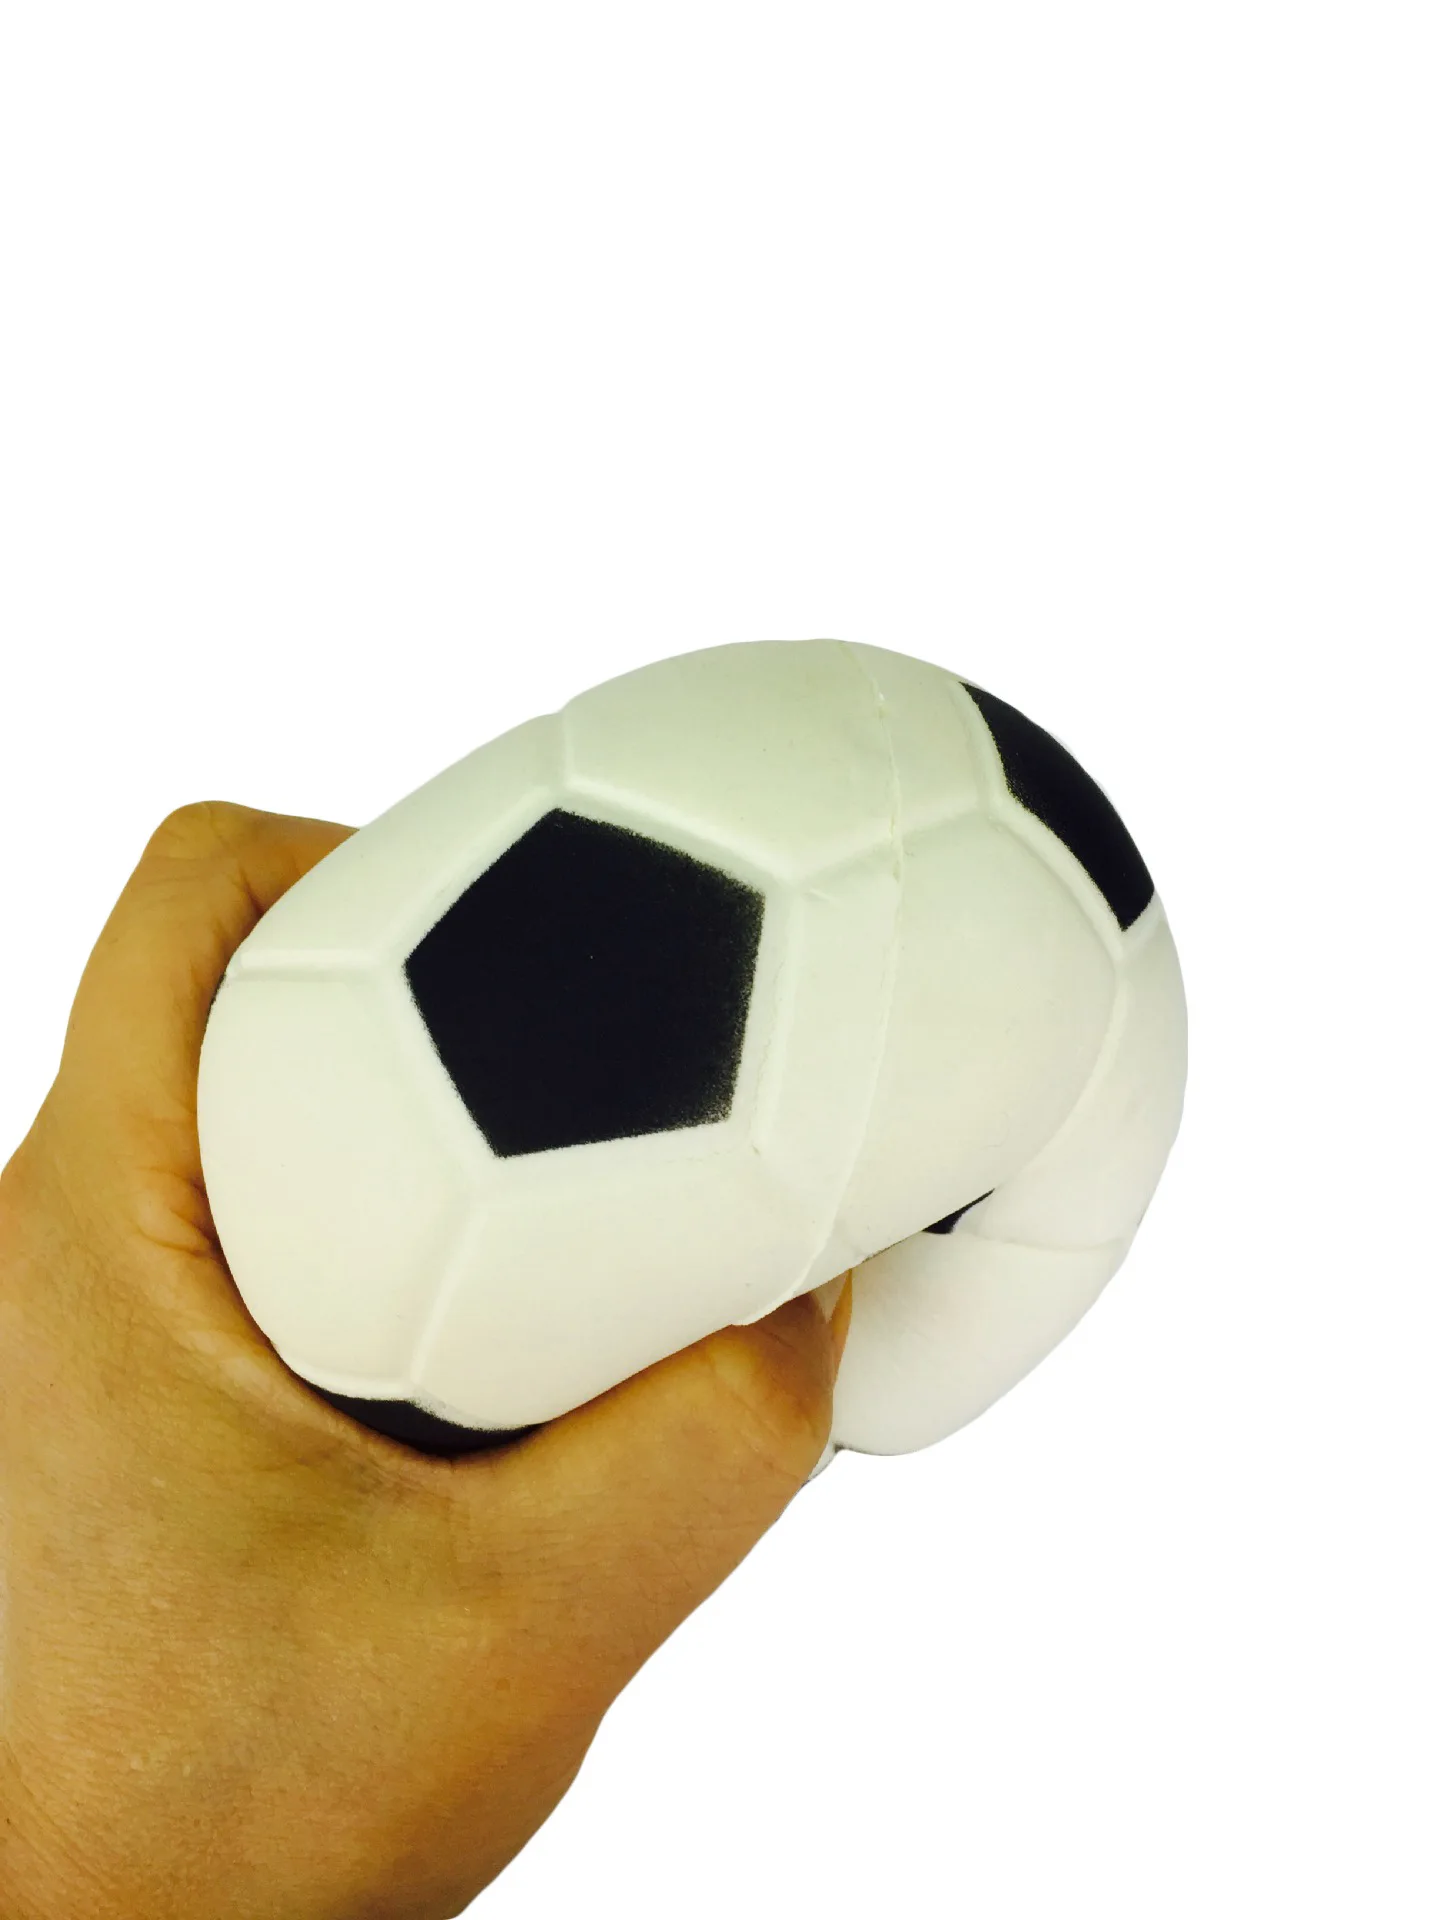 В настоящее время доступен Мягкий Кубок мира по футболу вспенивания экструзии с сладкие воспоминания пены ПУ футбольной модели вентирования бал